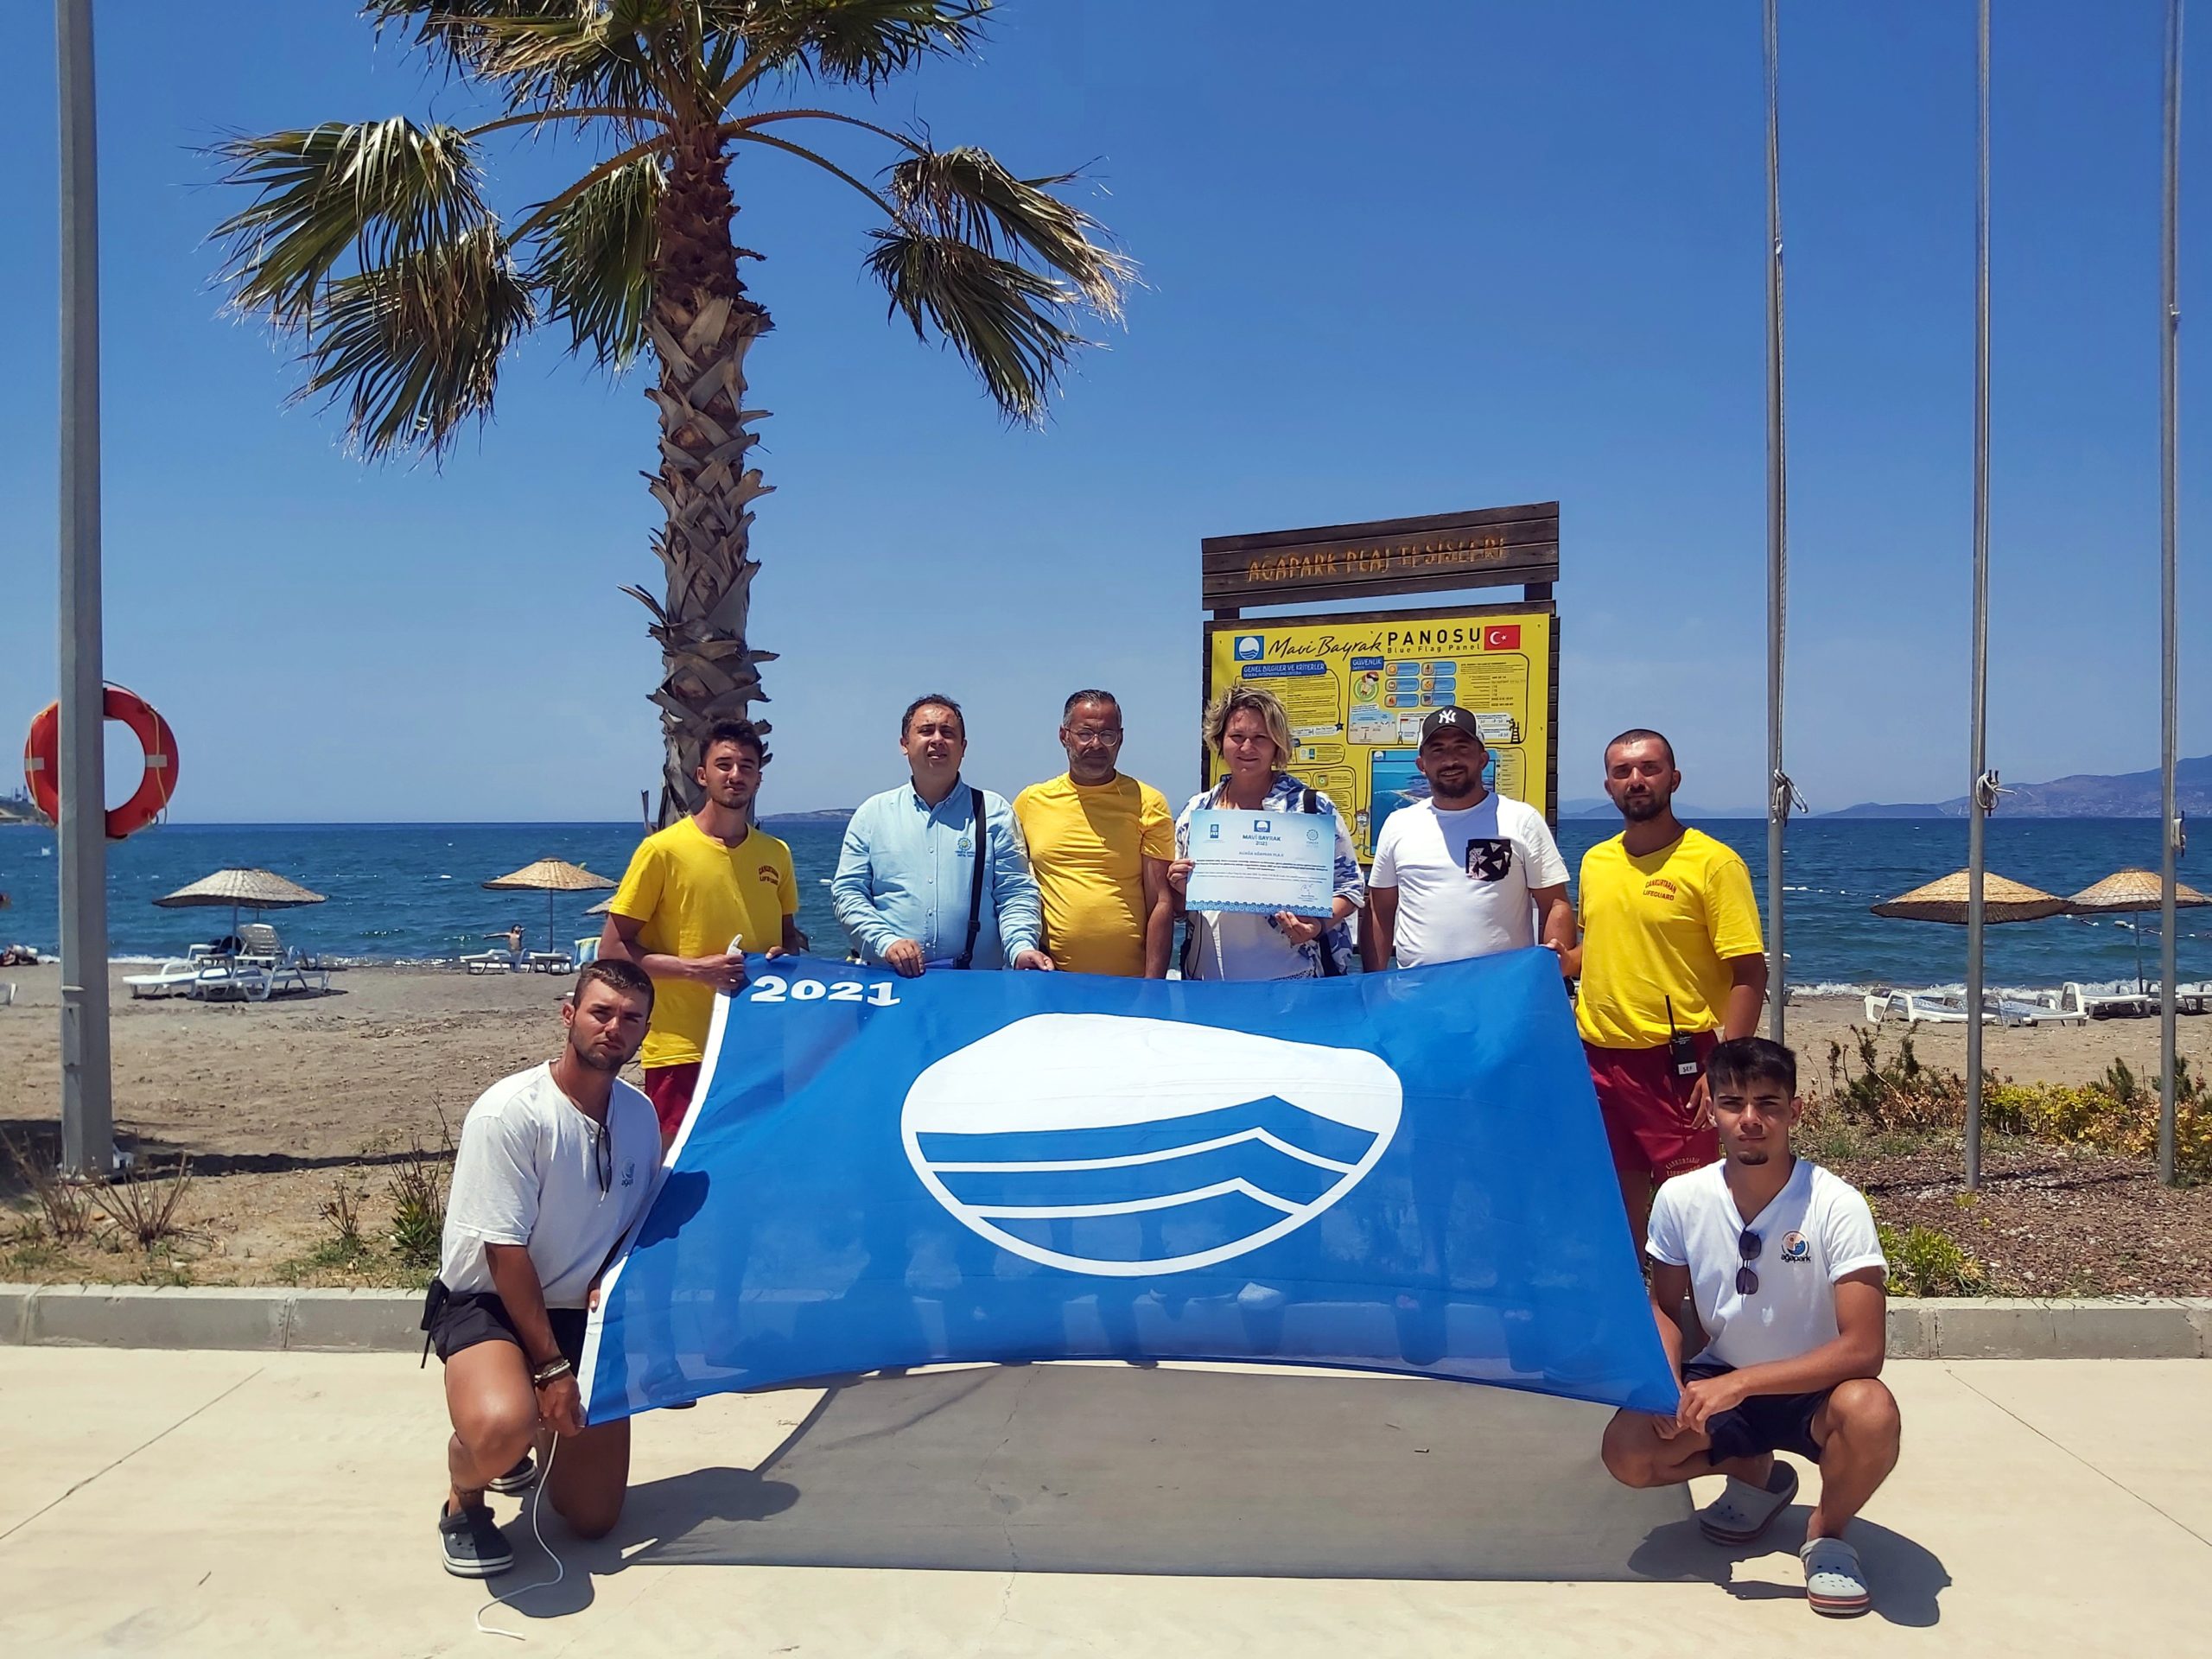  Aliağa Ağapark Plajı 5.Kez Mavi Bayrak İle Taçlandırıldı